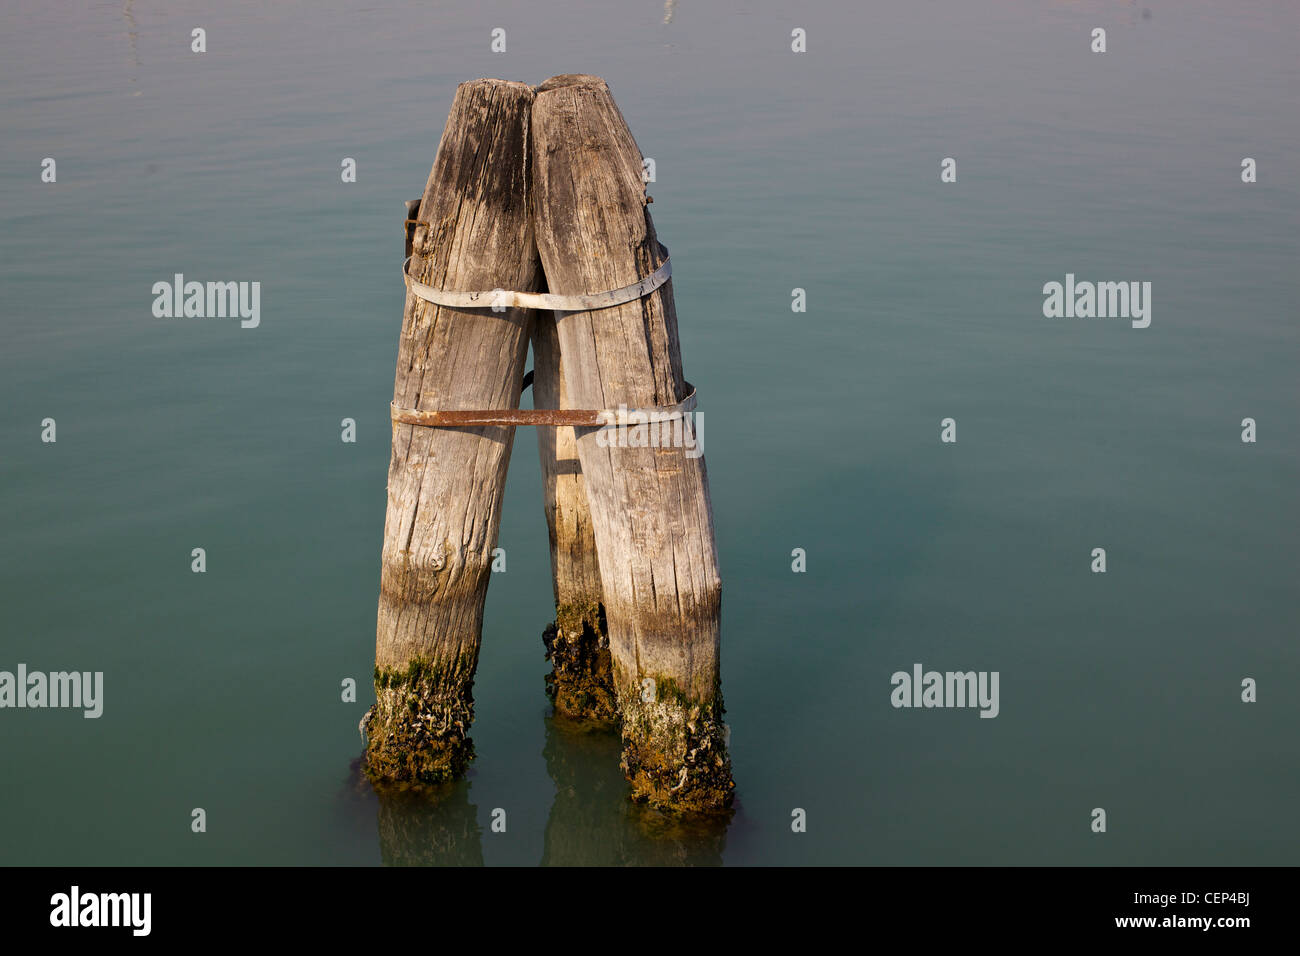 Le briccole, poteaux de bois de chêne européen utilisé pour marquer le satellite de navigation dans la lagune de Venise Banque D'Images